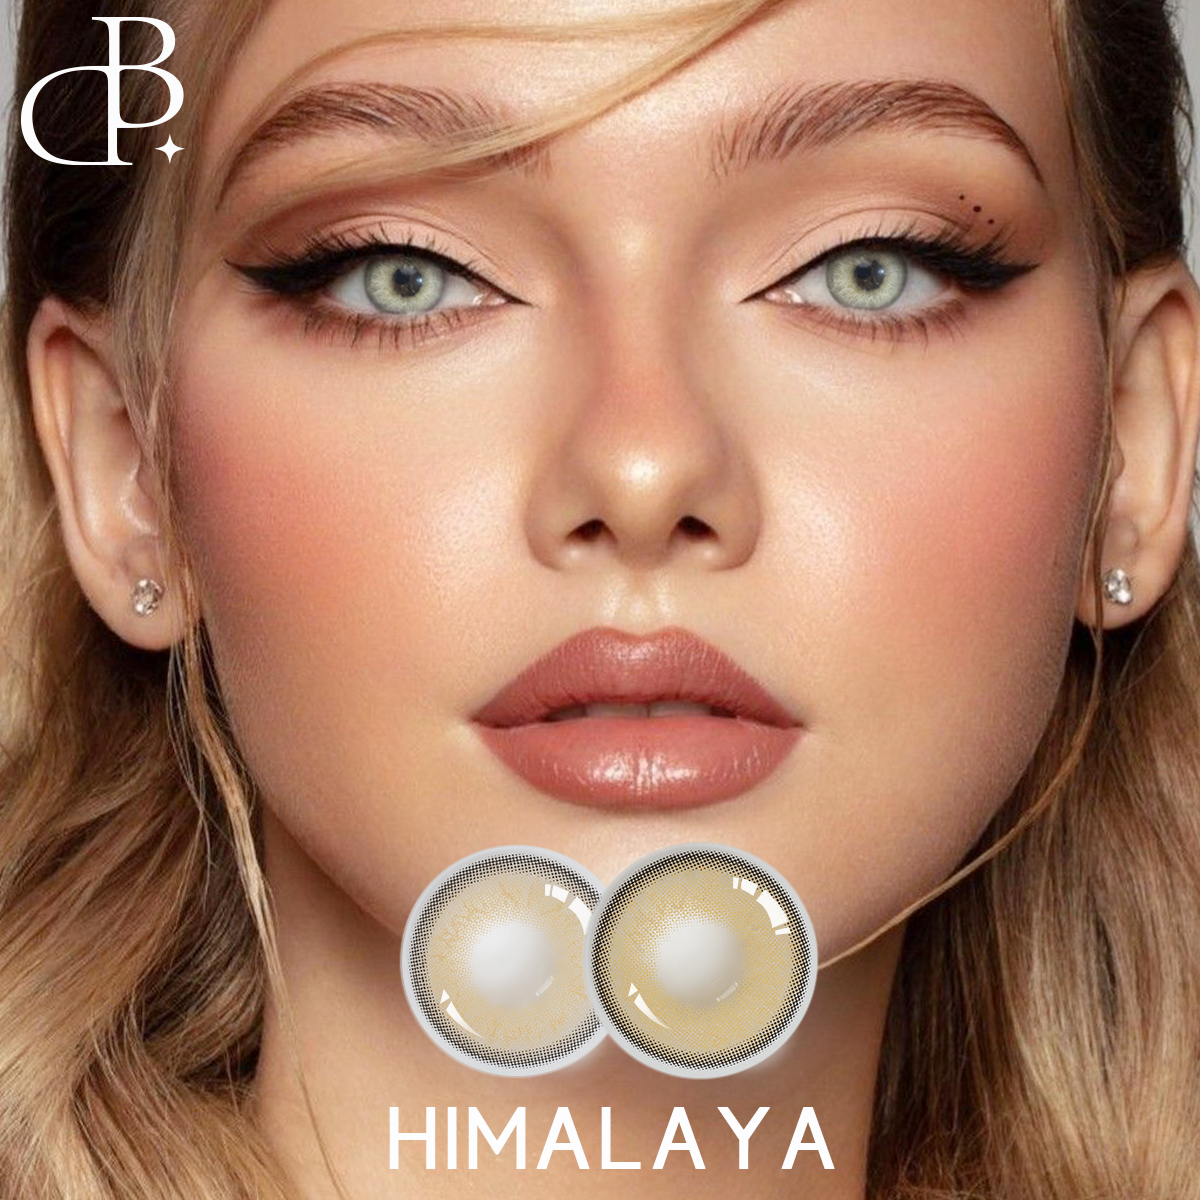 Контактні лінзи природного кольору очей Одноденні контактні лінзи HIMALAYA Логотип прозорих контактних лінз Спеціальний логотип